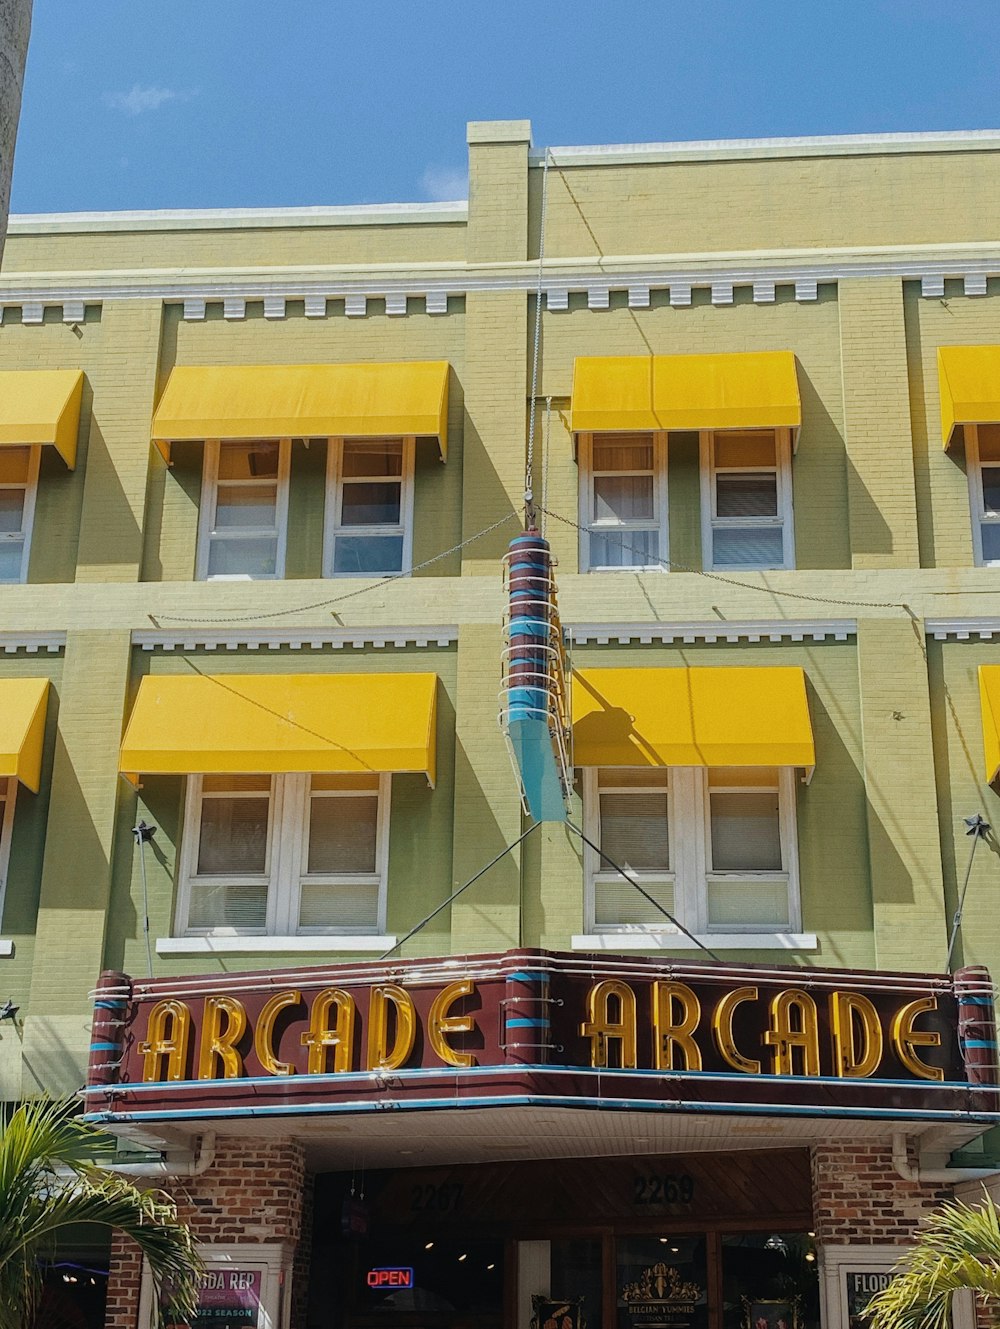 Ein Gebäude mit einem Schild mit der Aufschrift Arcade Arcade